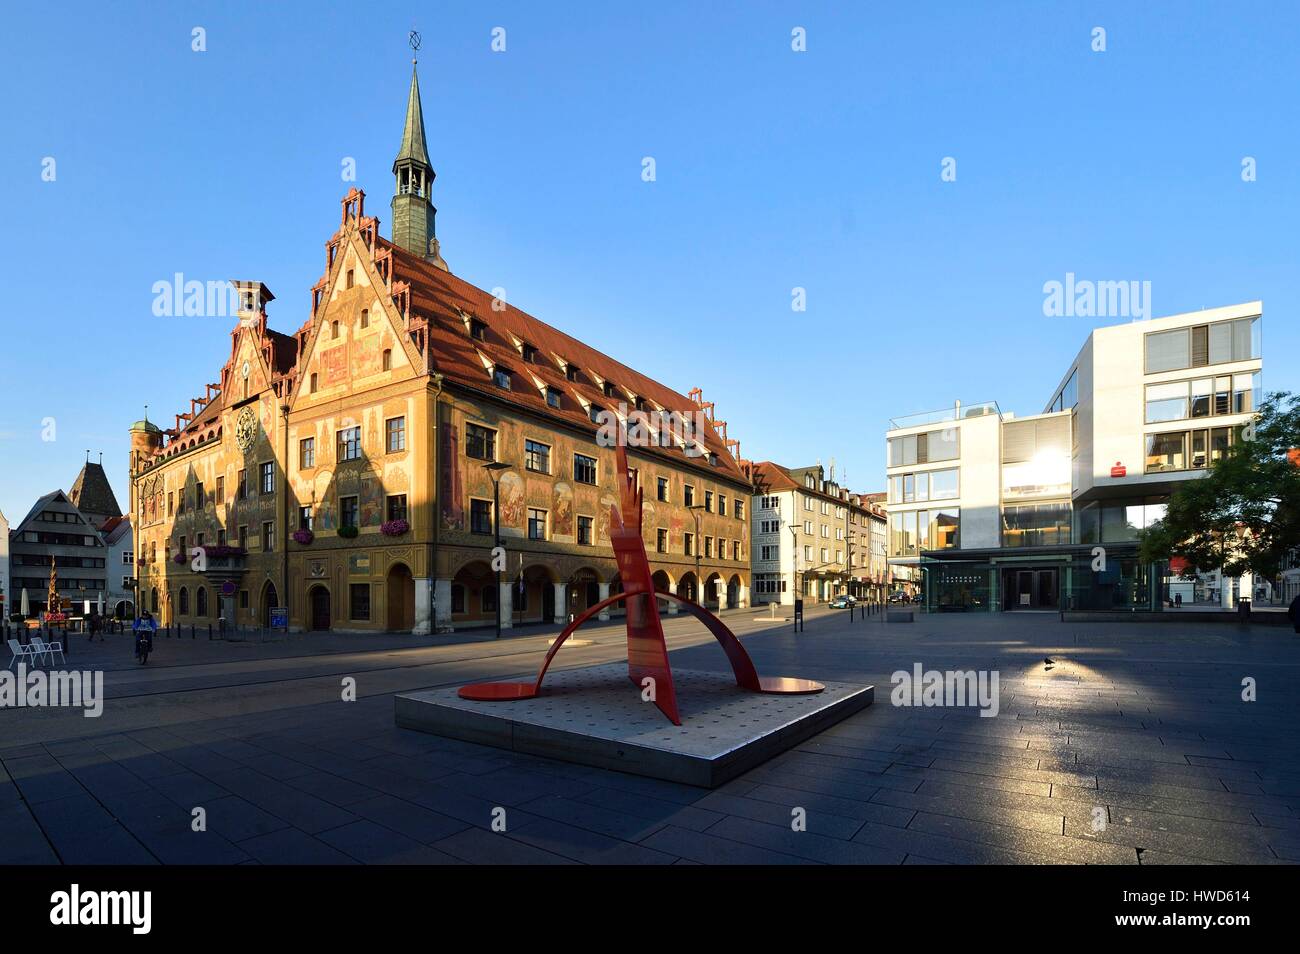 Deutschland, Baden-Württemberg, Ulm, Albert Einstein' s Geburtsort, Rathaus (Town Hall) mit gotischen Stil, erbaut im Jahre 1370 Stockfoto